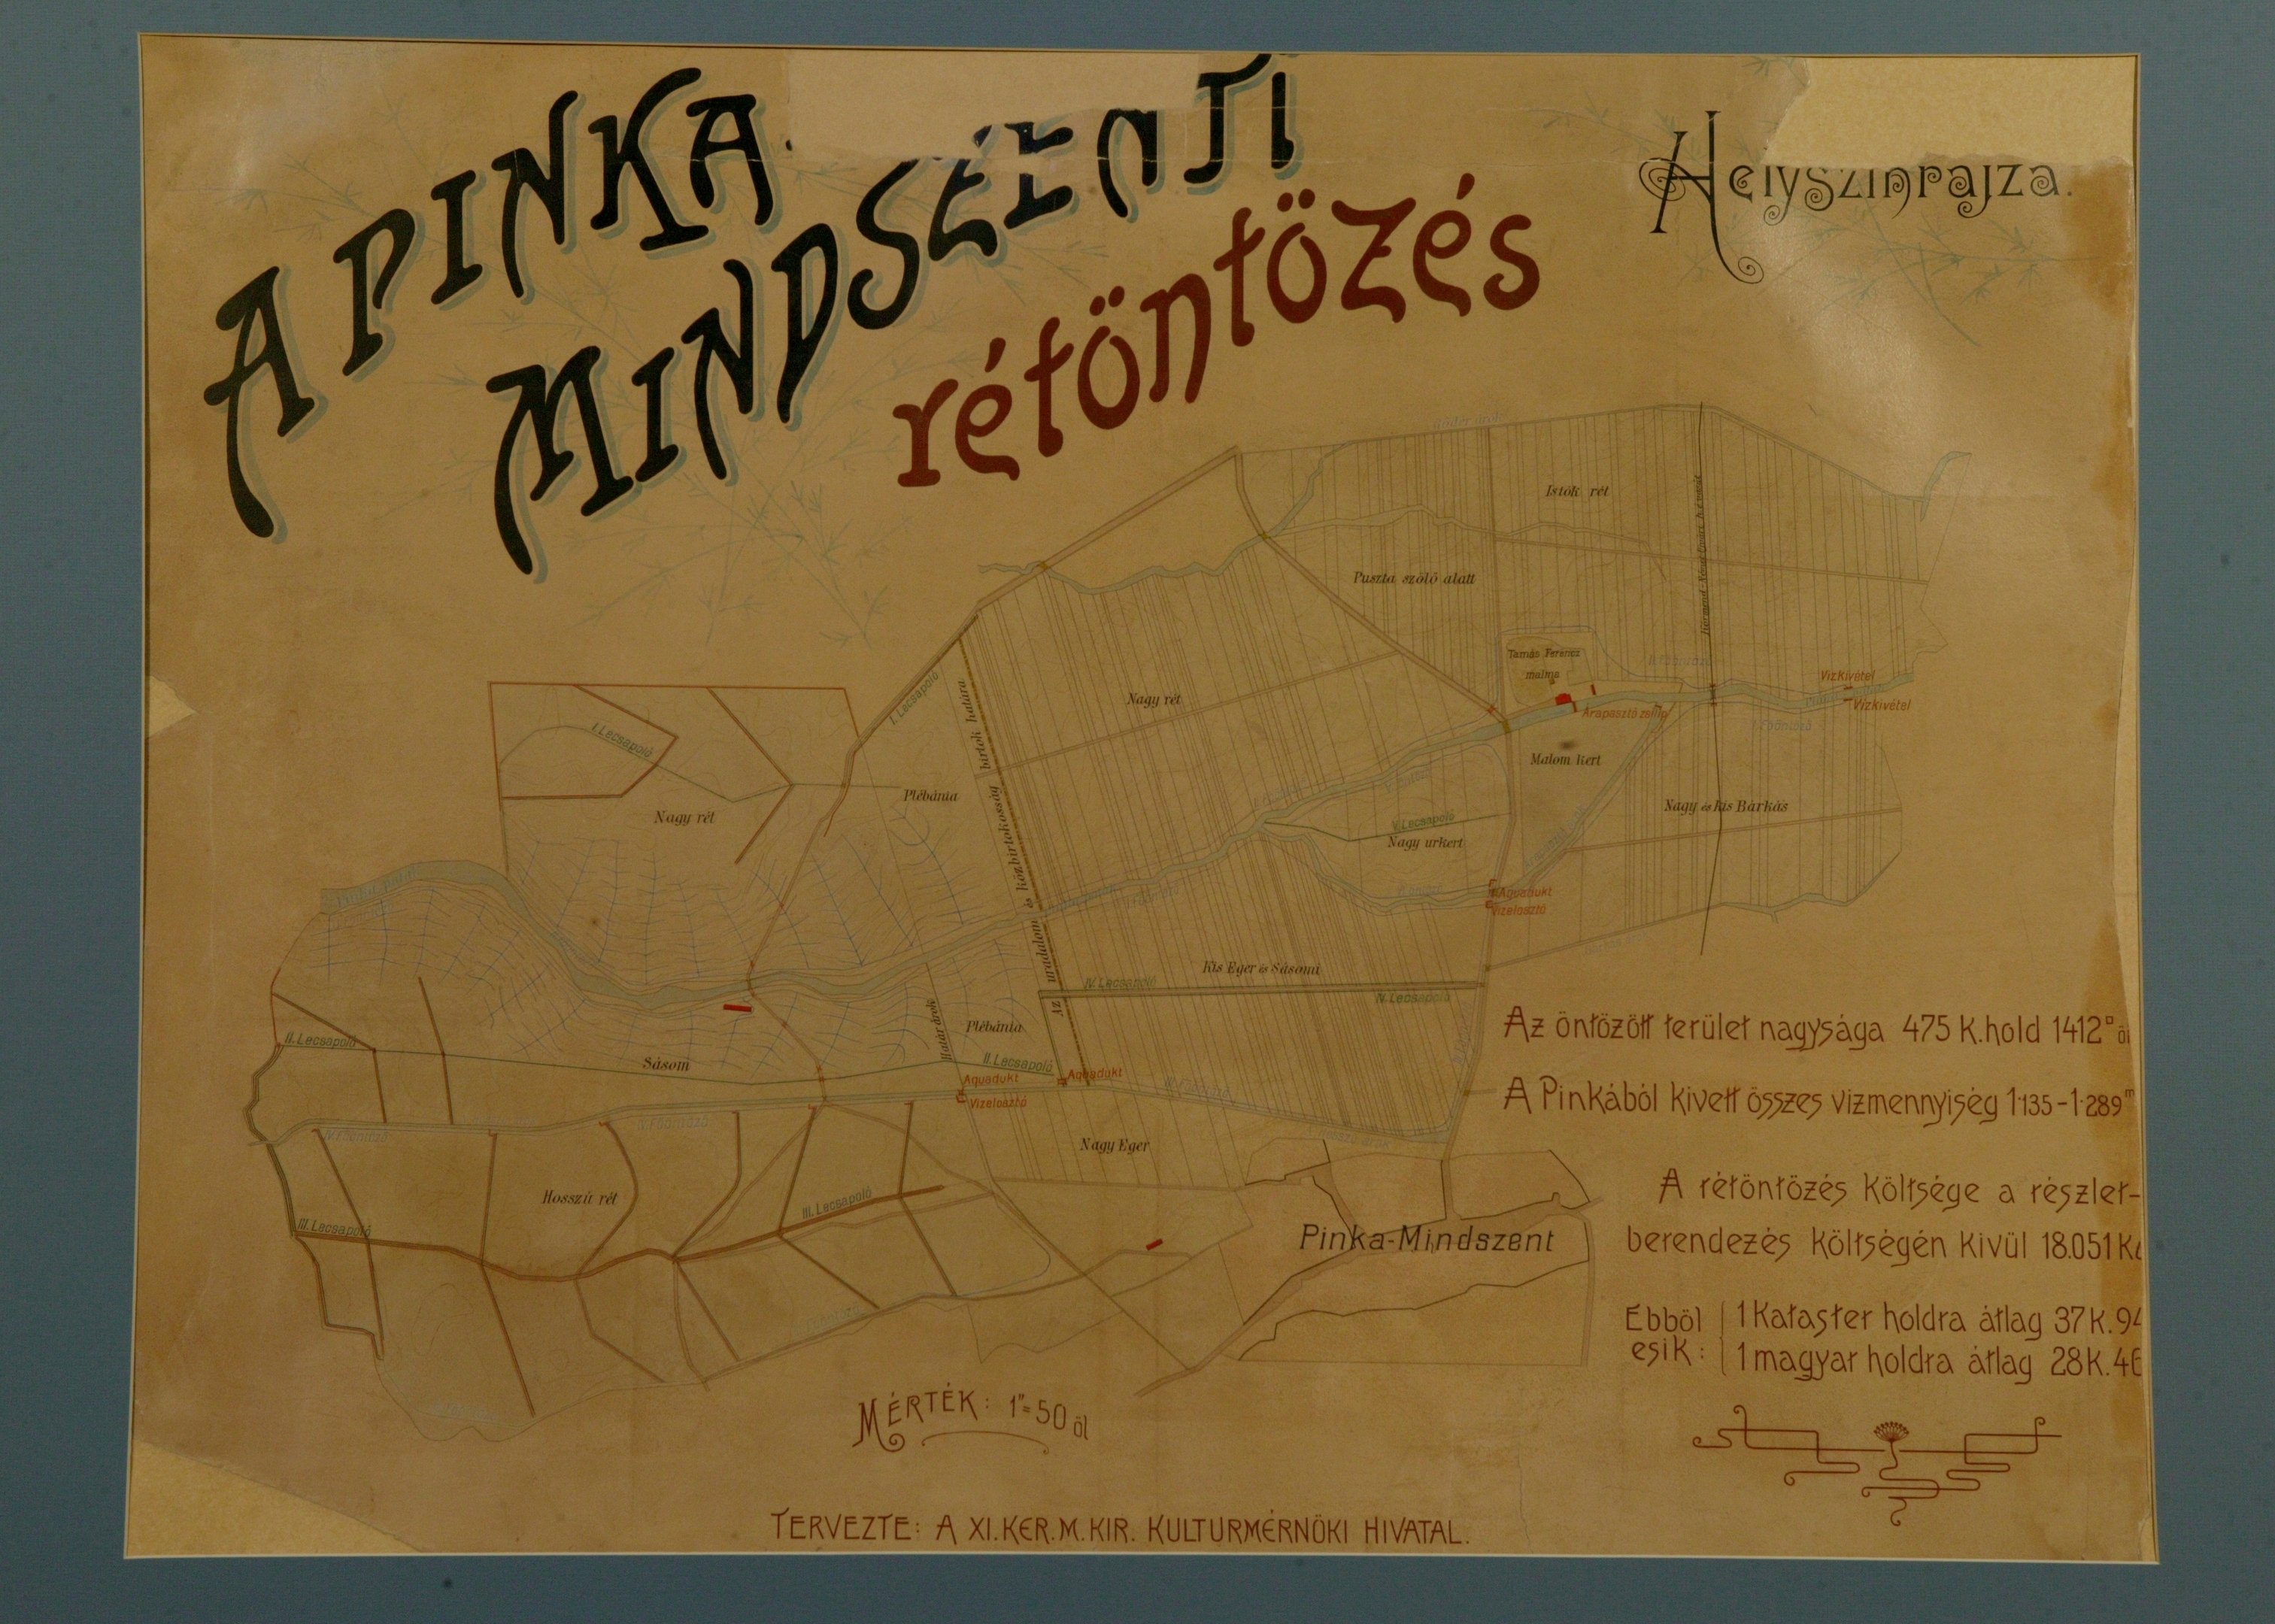 Pinka-Mindszenti rétöntözés helyszínrajza (Magyar Környezetvédelmi és Vízügyi Múzeum - Duna Múzeum CC BY-NC-SA)